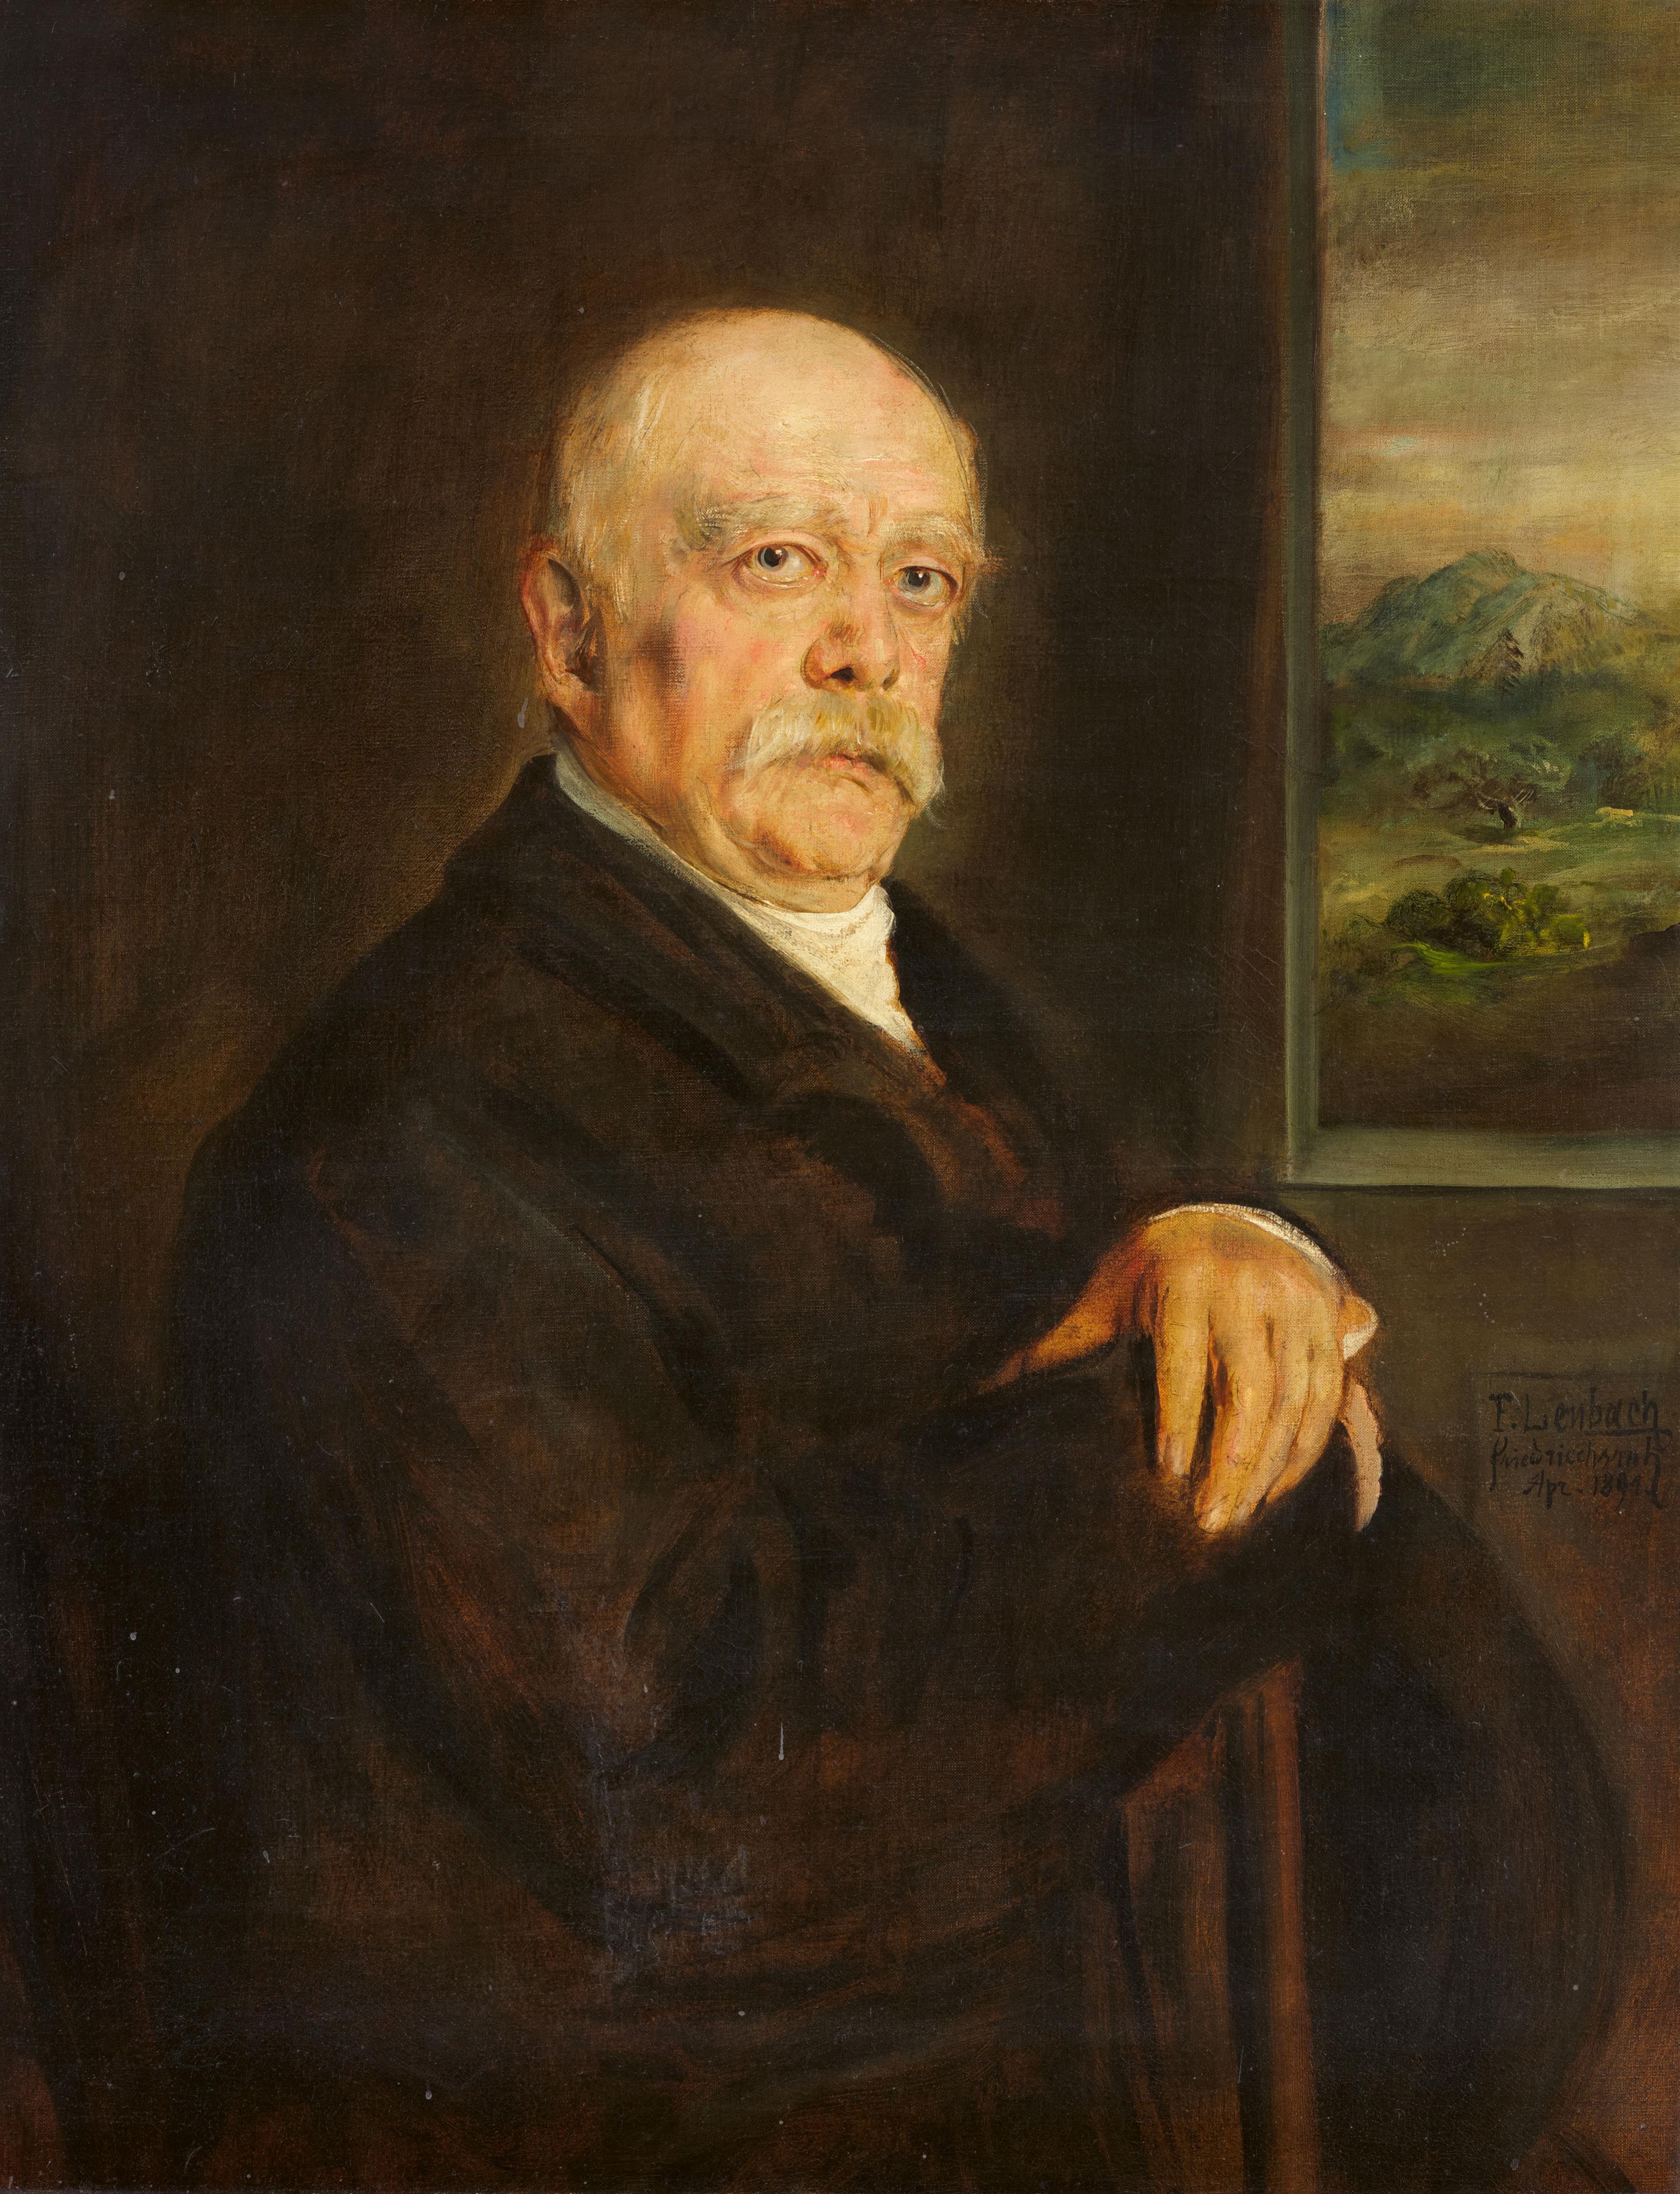 Franz Seraph von Lenbach - Otto von Bismarck in Halbfigur vor Landschaftsausschnitt - image-1